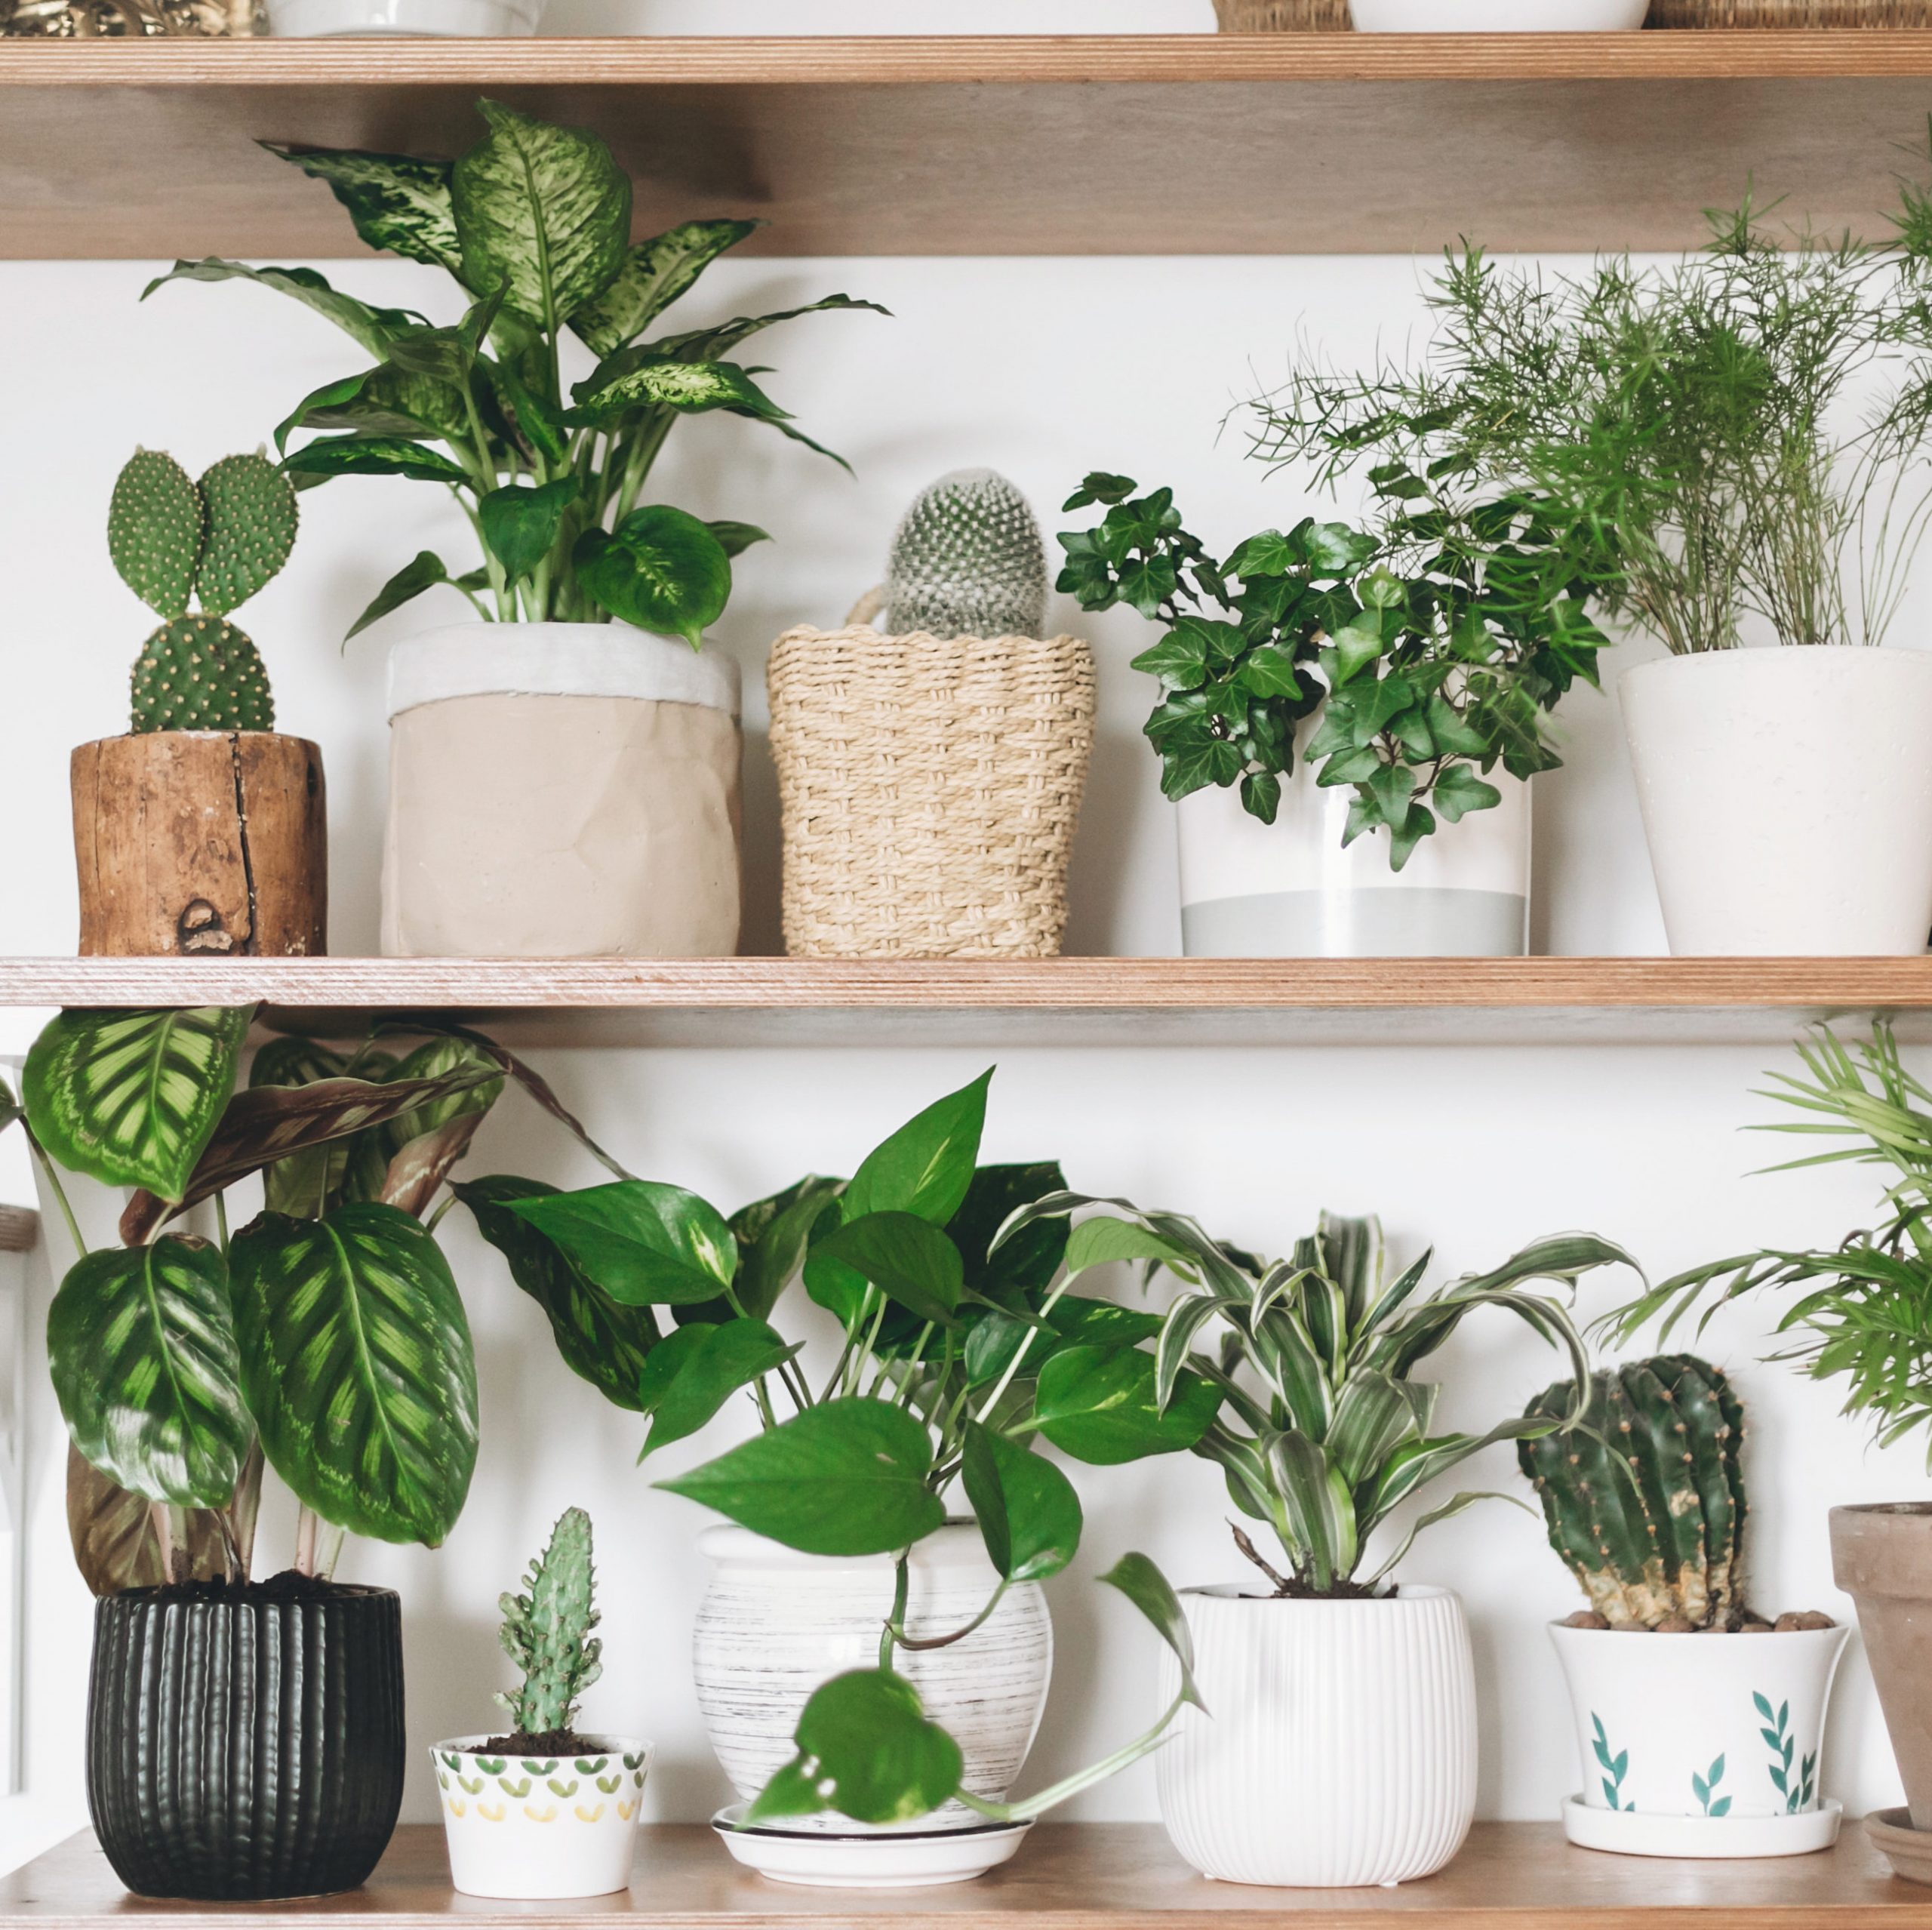 Buy Plants Online, Order Live Plants for Sale